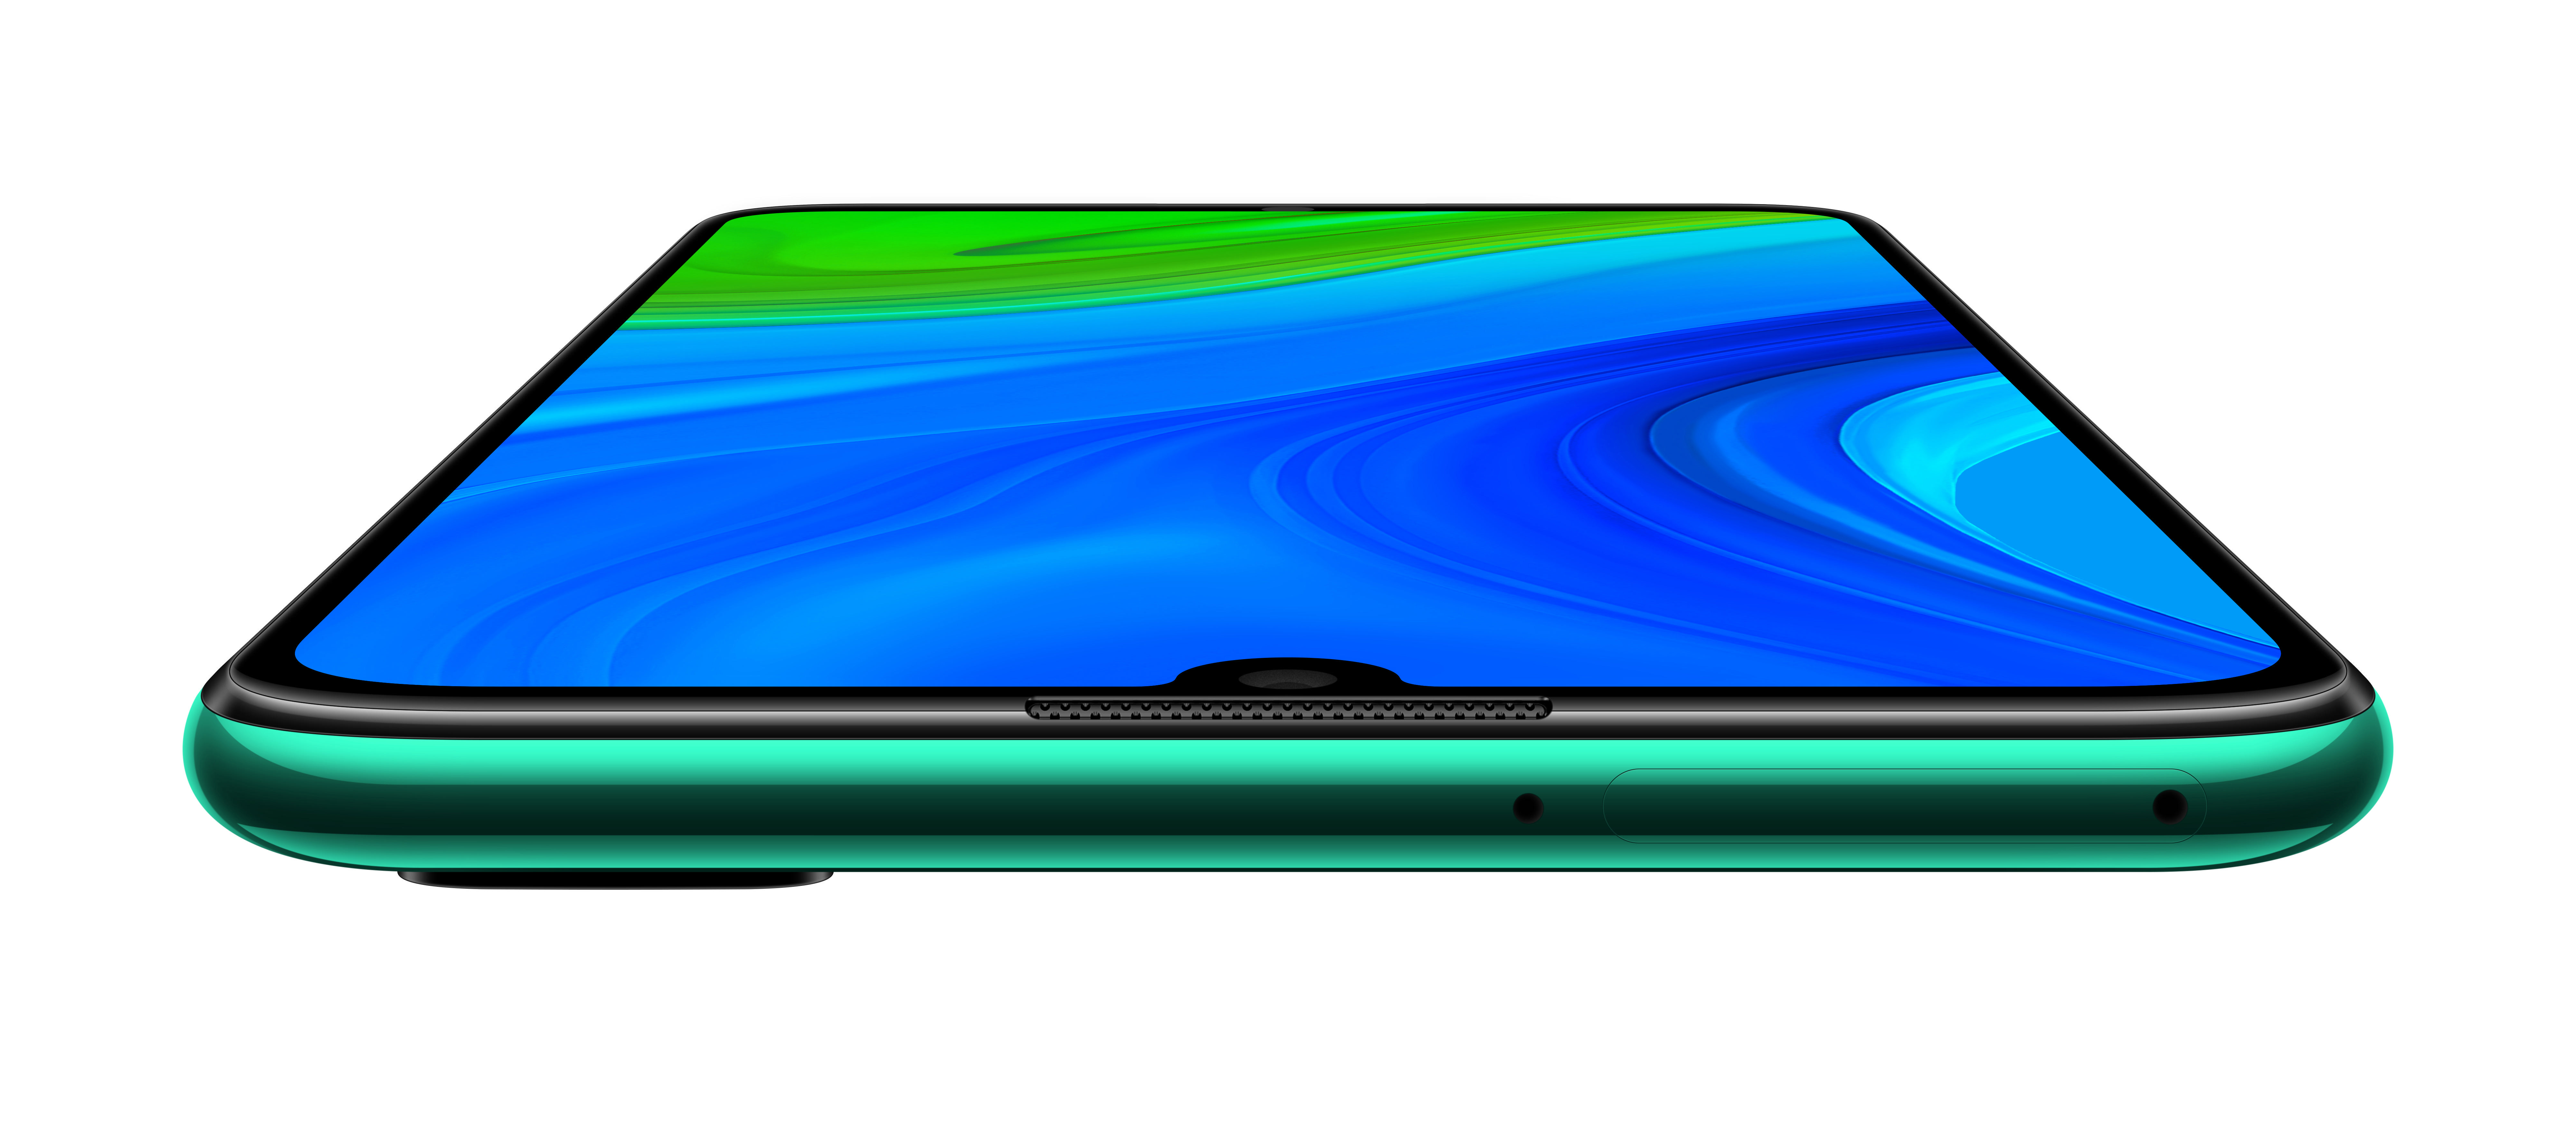 Dual 2020 Green GB SIM smart P HUAWEI Emerald 128